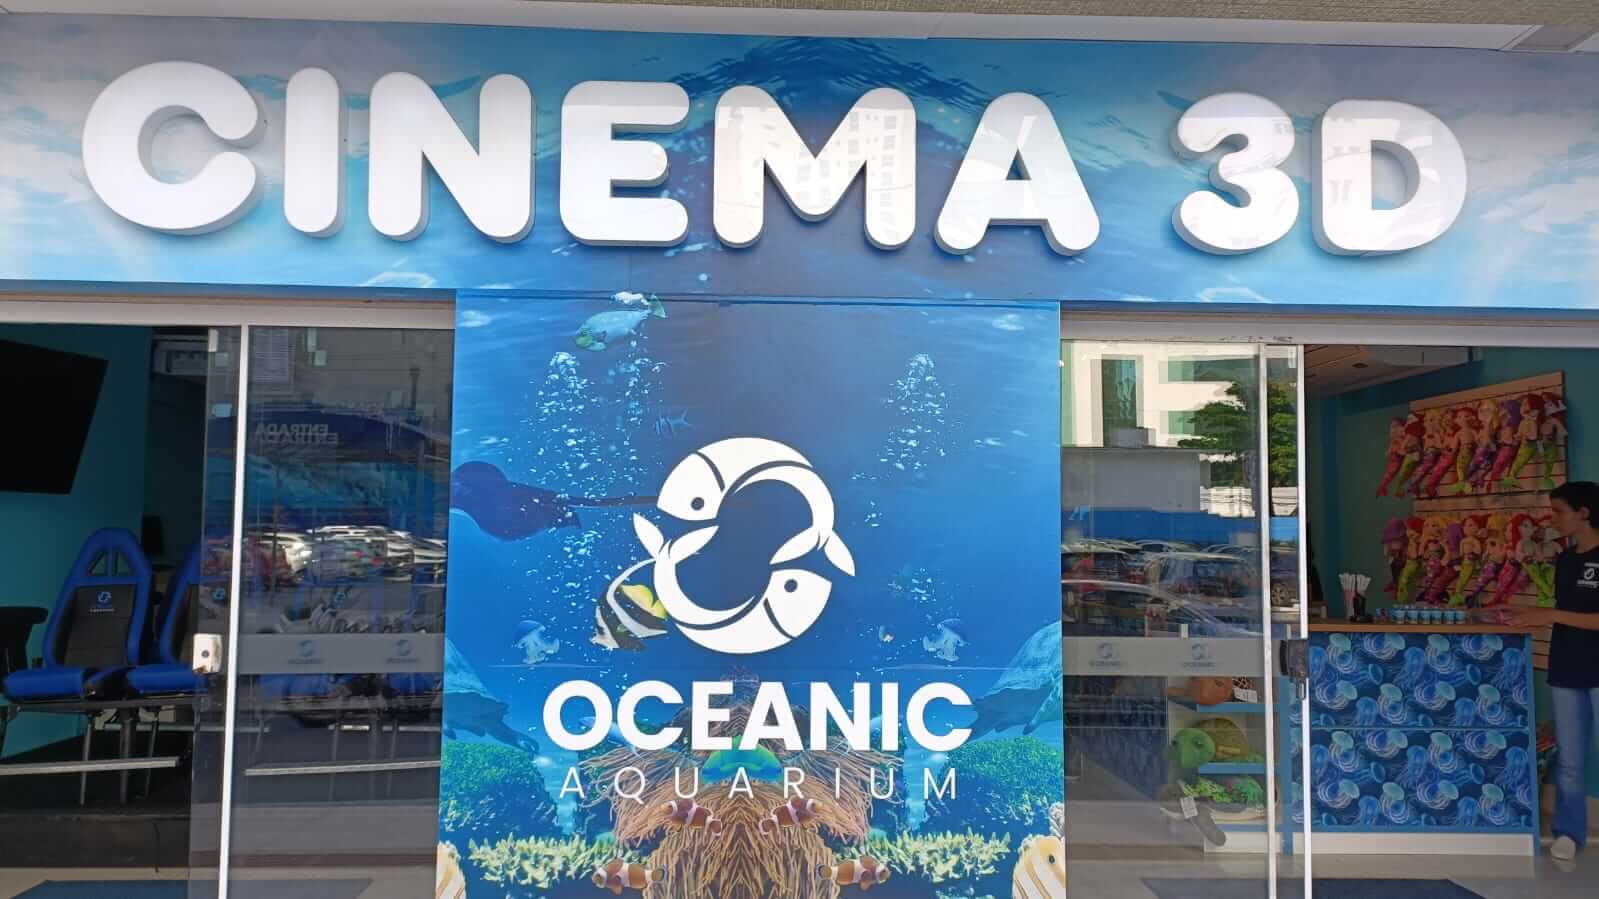 Oceanic Aquarium